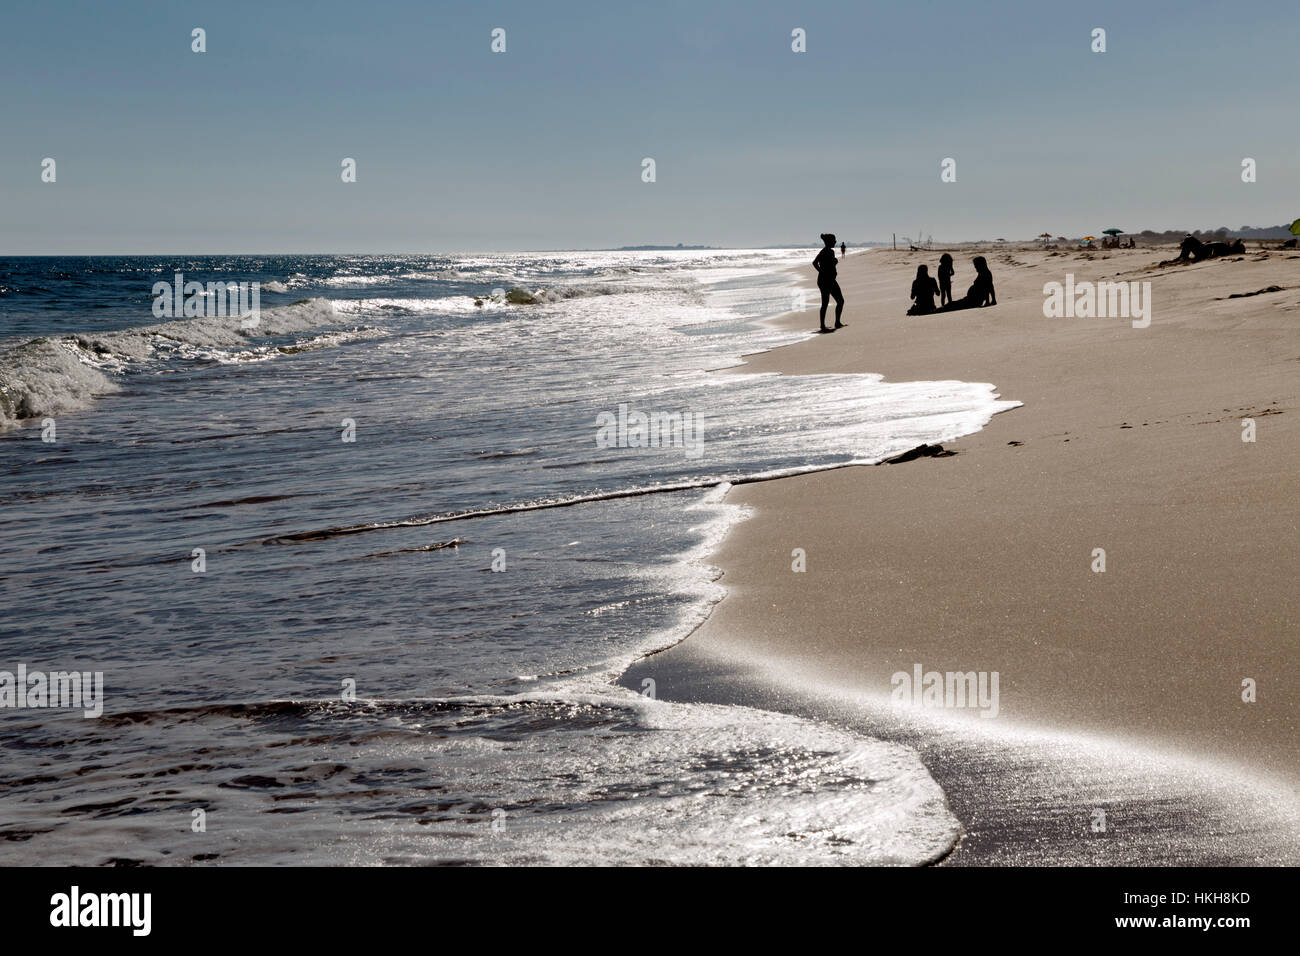 Praia de Cacela Velha beach, Cacela Velha, Algarve, Portugal, Europe Stock Photo